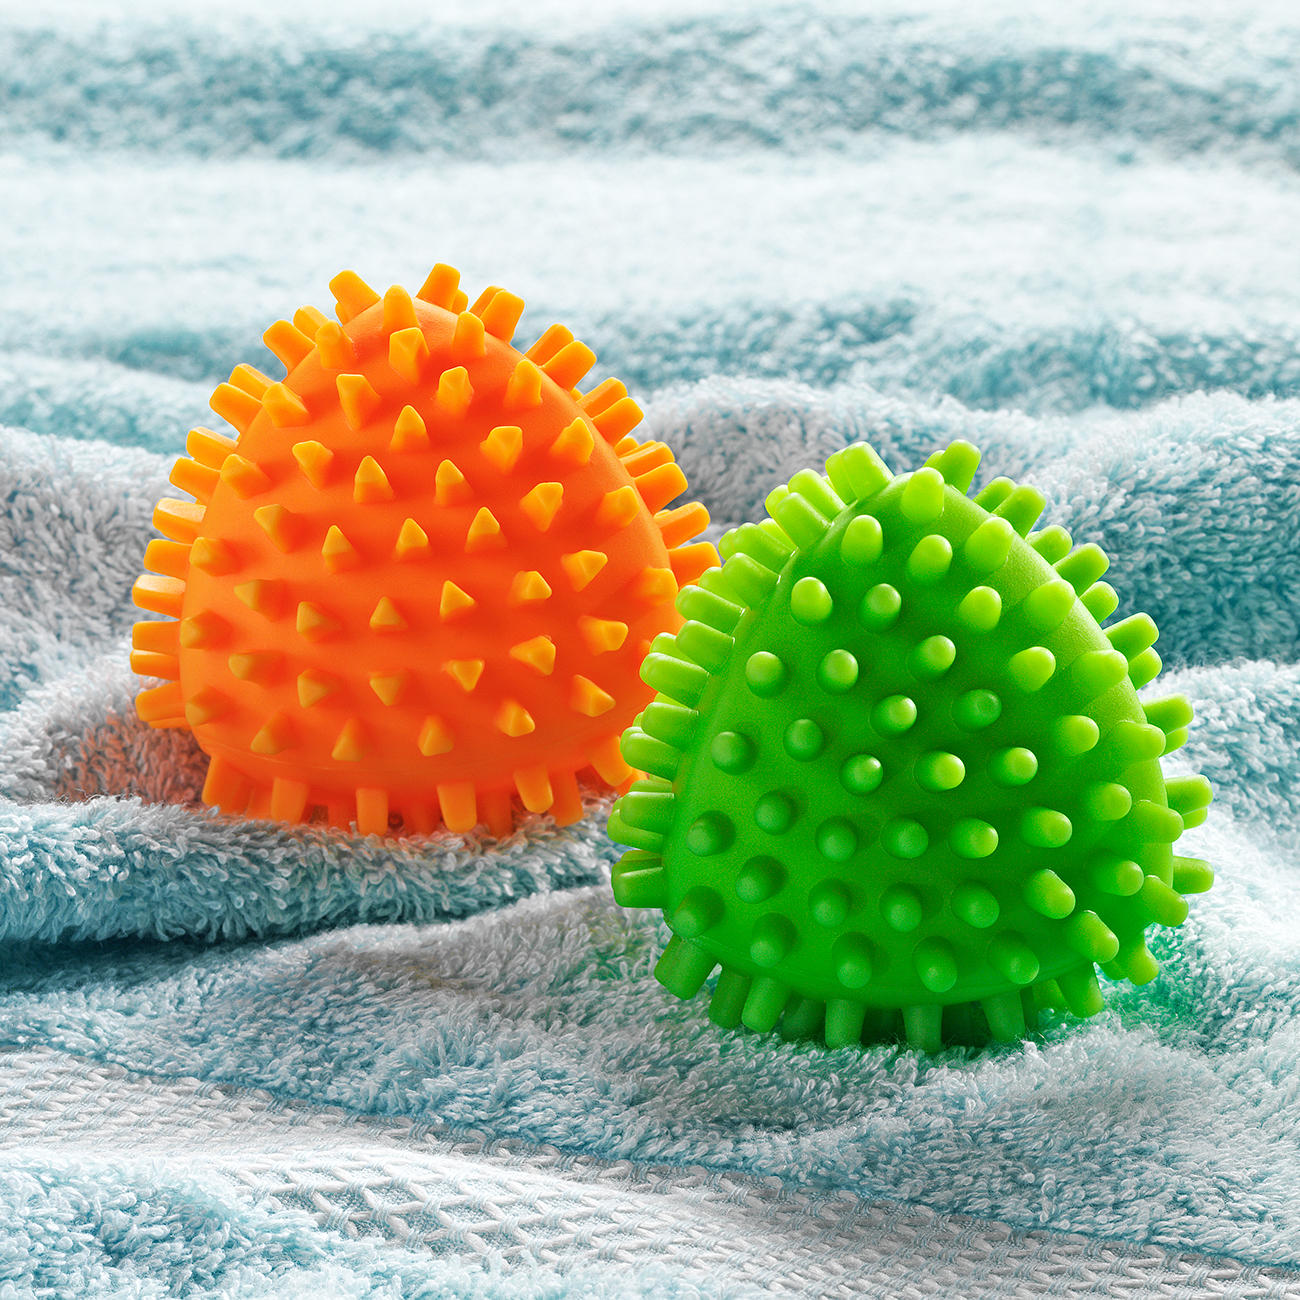 Fliyeong 4X Waschball Wäsche Ball Haarentfernung Ball Trockner Bälle für Kleidung Maschinenwaschzubehör 5 cm Durchmesser Farbe Zufällig Langlebig und praktisch